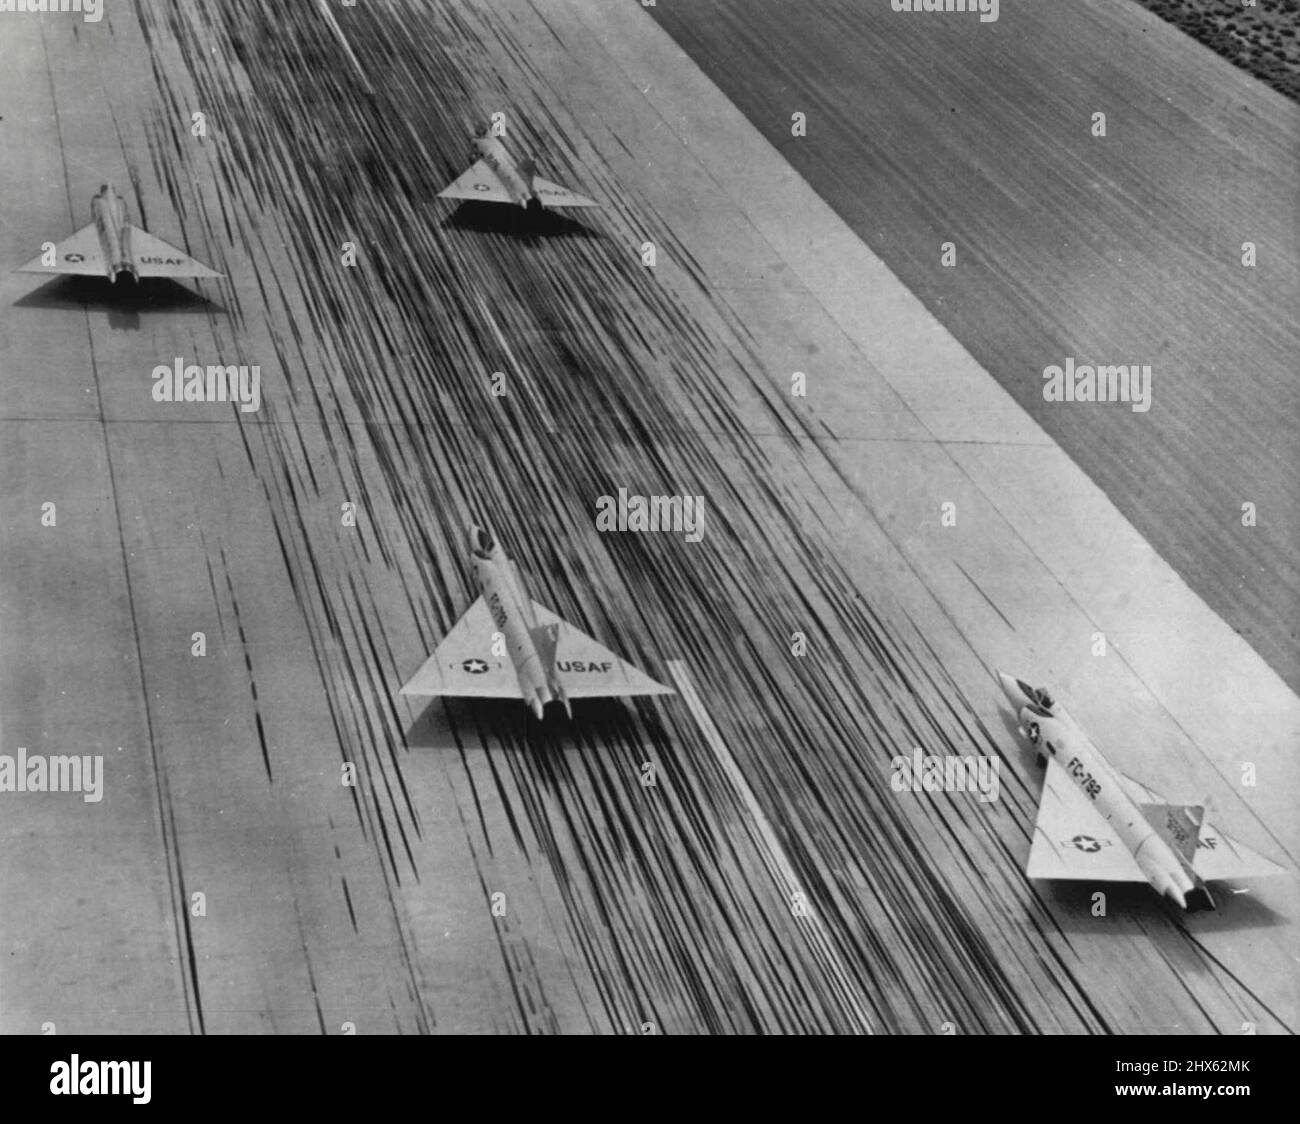 Illusion de vitesse - ces quatre intercepteurs de jet Convair F-102A tout temps semblent courir sur la piste de Palmdale, Calif. Les avions sont encore debout mais l'illusion de vitesse vient des intercepteurs d'aile delta en rationalisant et des centaines de stries de pneu laissées sur la piste de béton par avion d'atterrissage. 04 octobre 1955. (Photo par AP Wirephoto). Banque D'Images